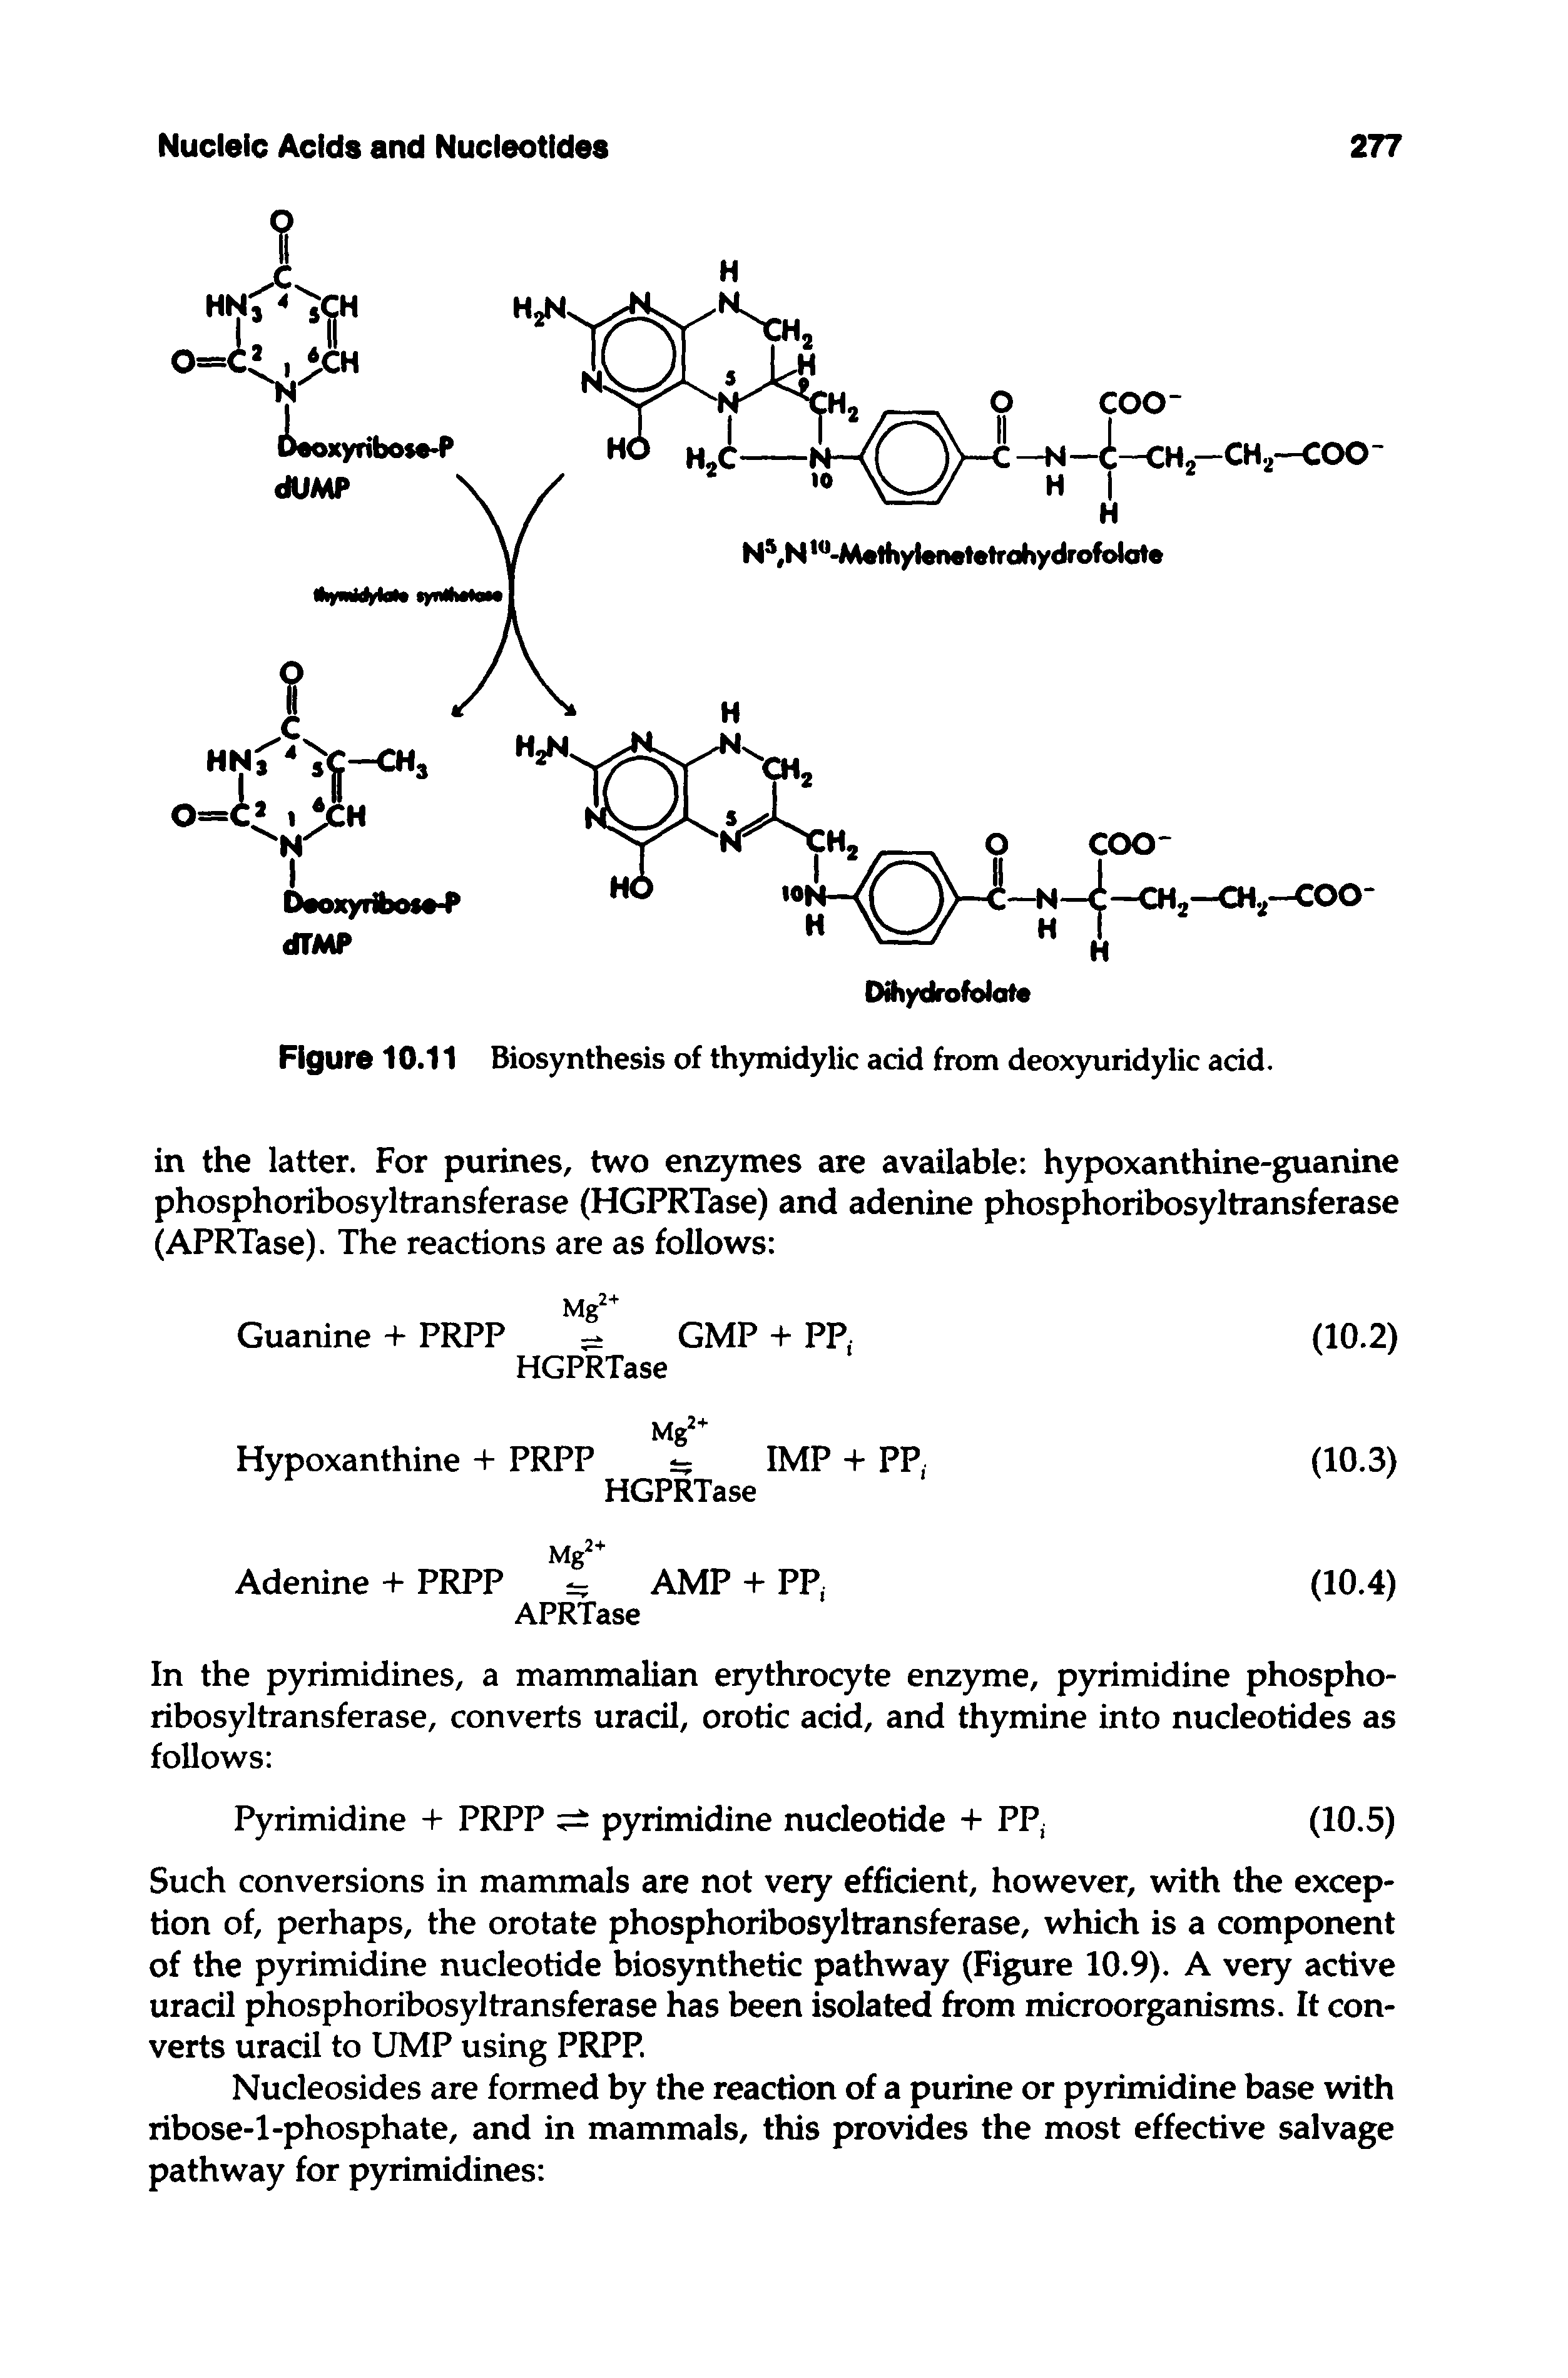 Figure 10.11 Biosynthesis of thymidylic acid from deoxyuridylic acid.